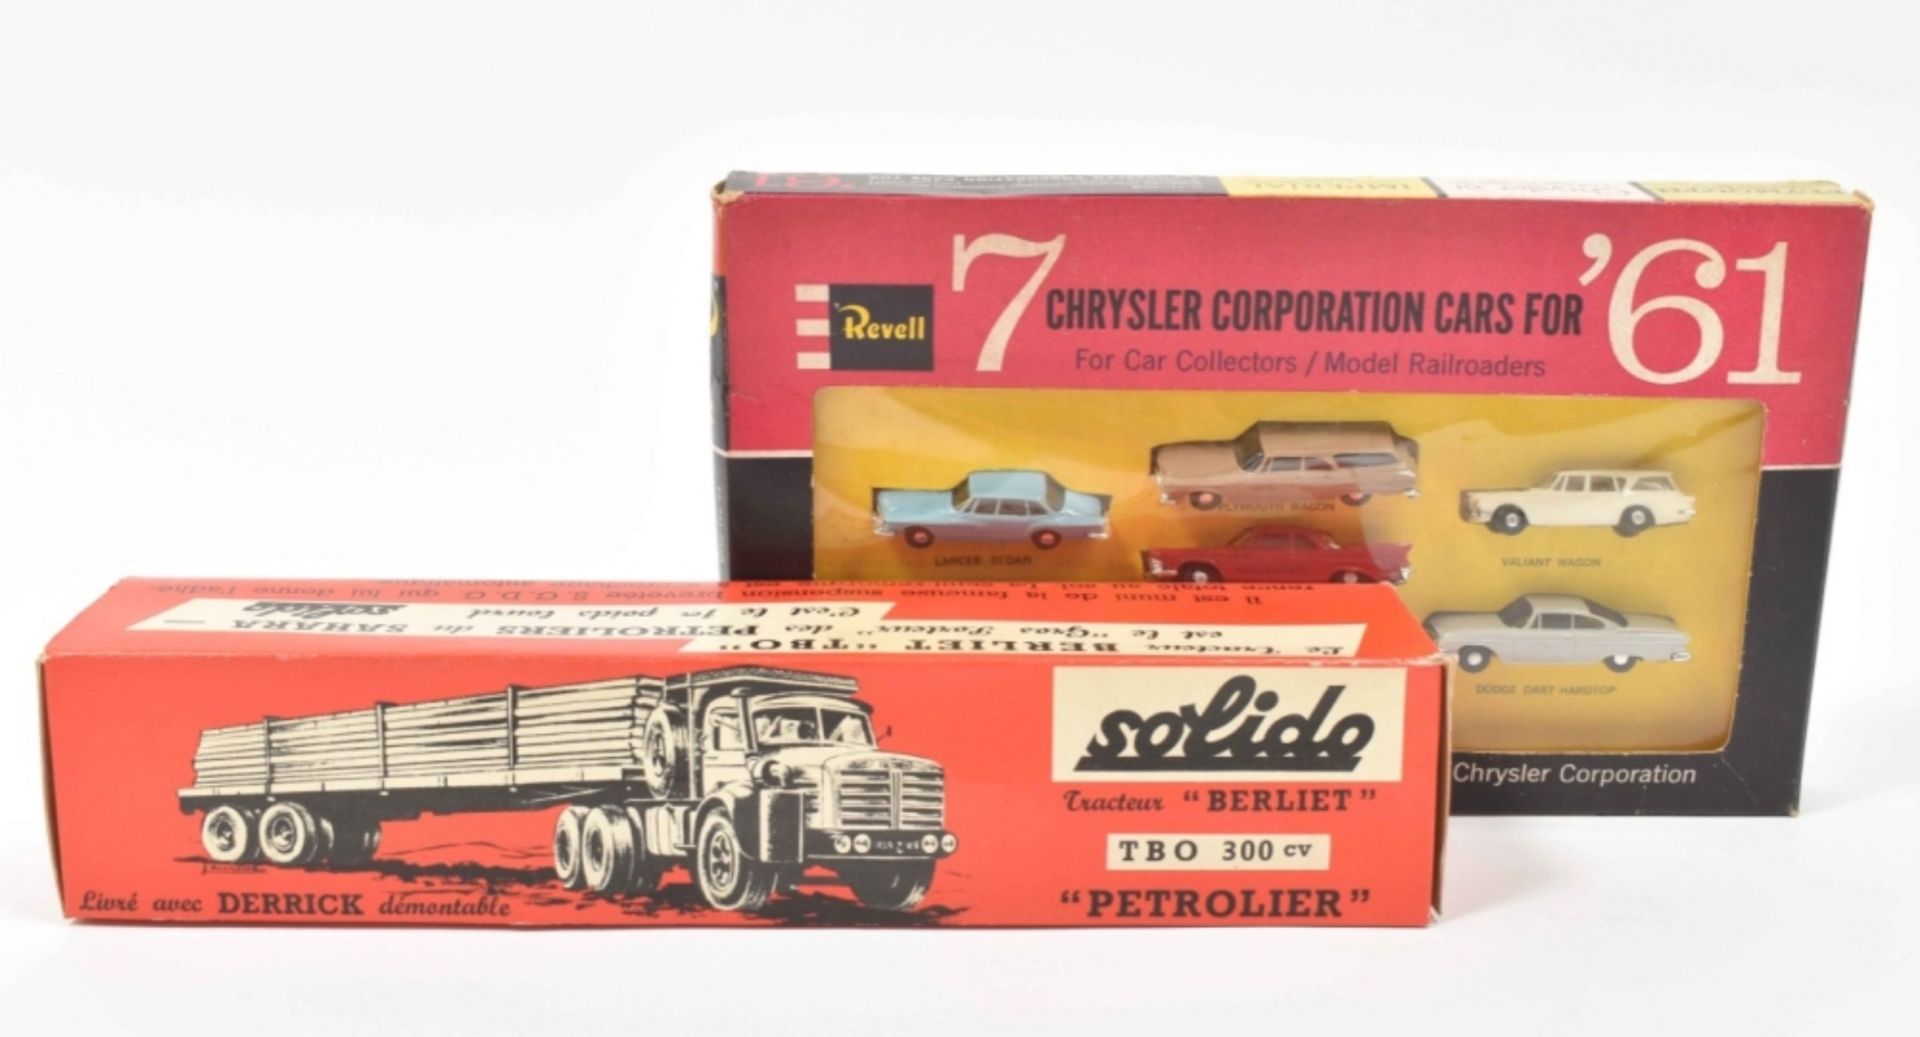 Revell. 7 Chrysler Corporation Cars for '61